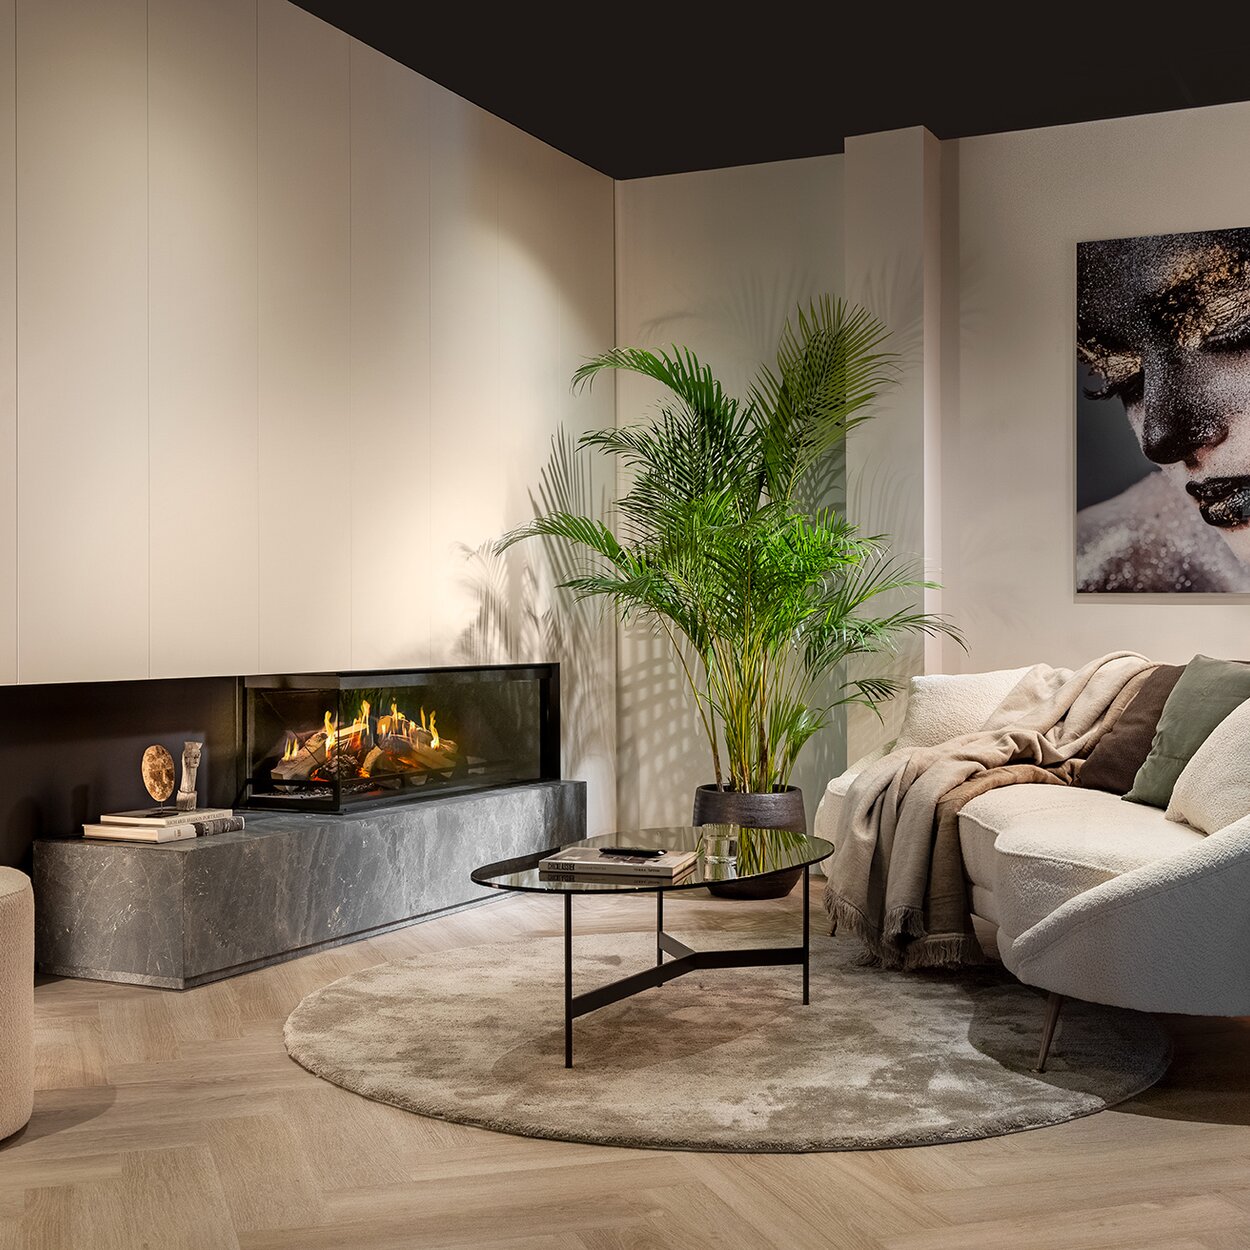 Le foyer électrique bi-face E-One 130 C encastré dans un salon blanc moderne avec canapé.